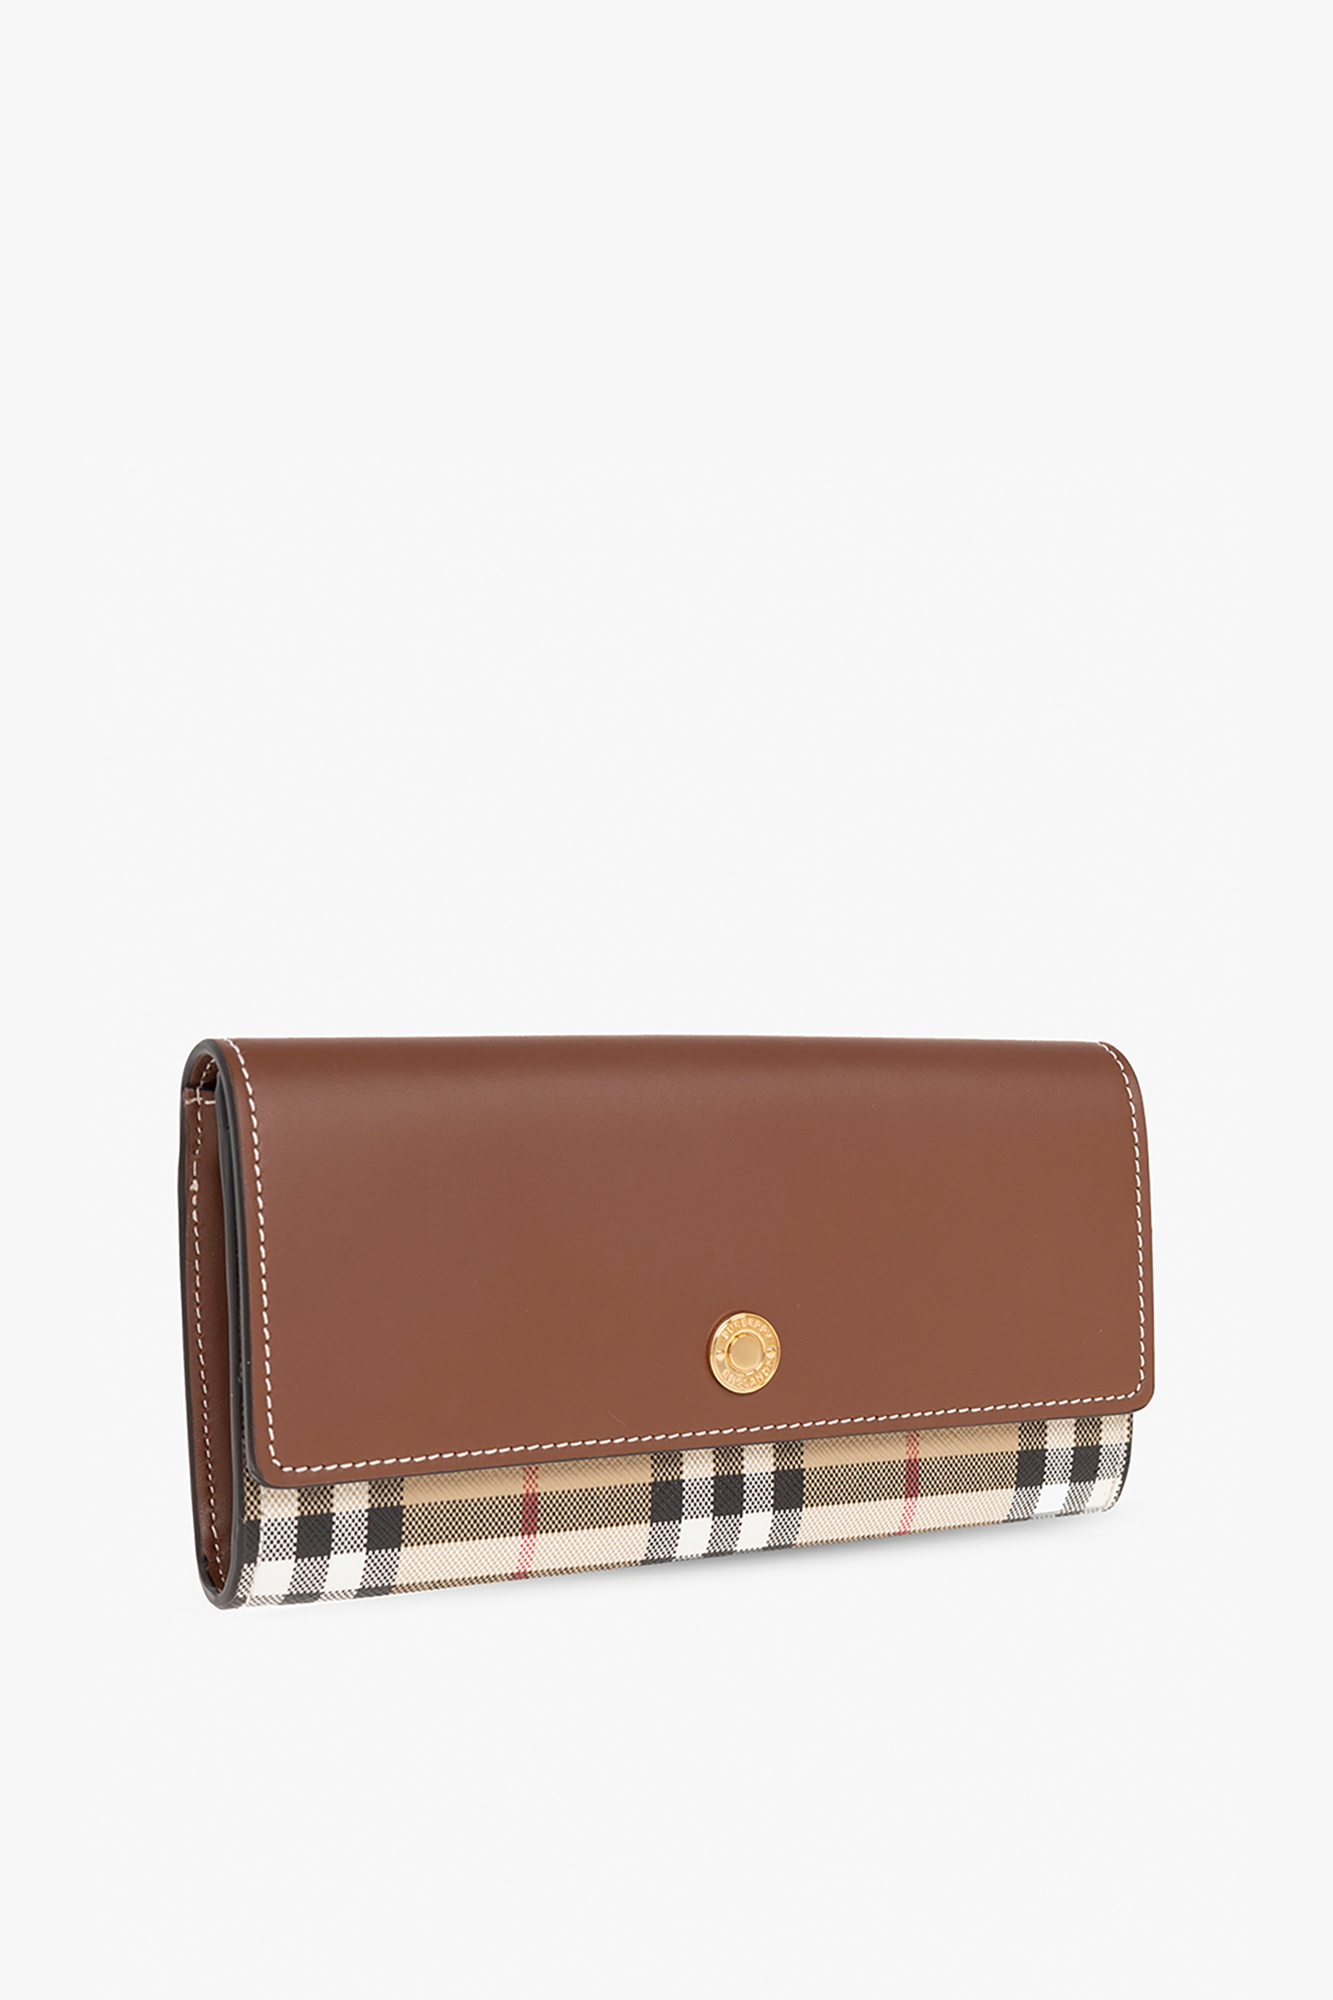 Burberry ‘Halton’ wallet